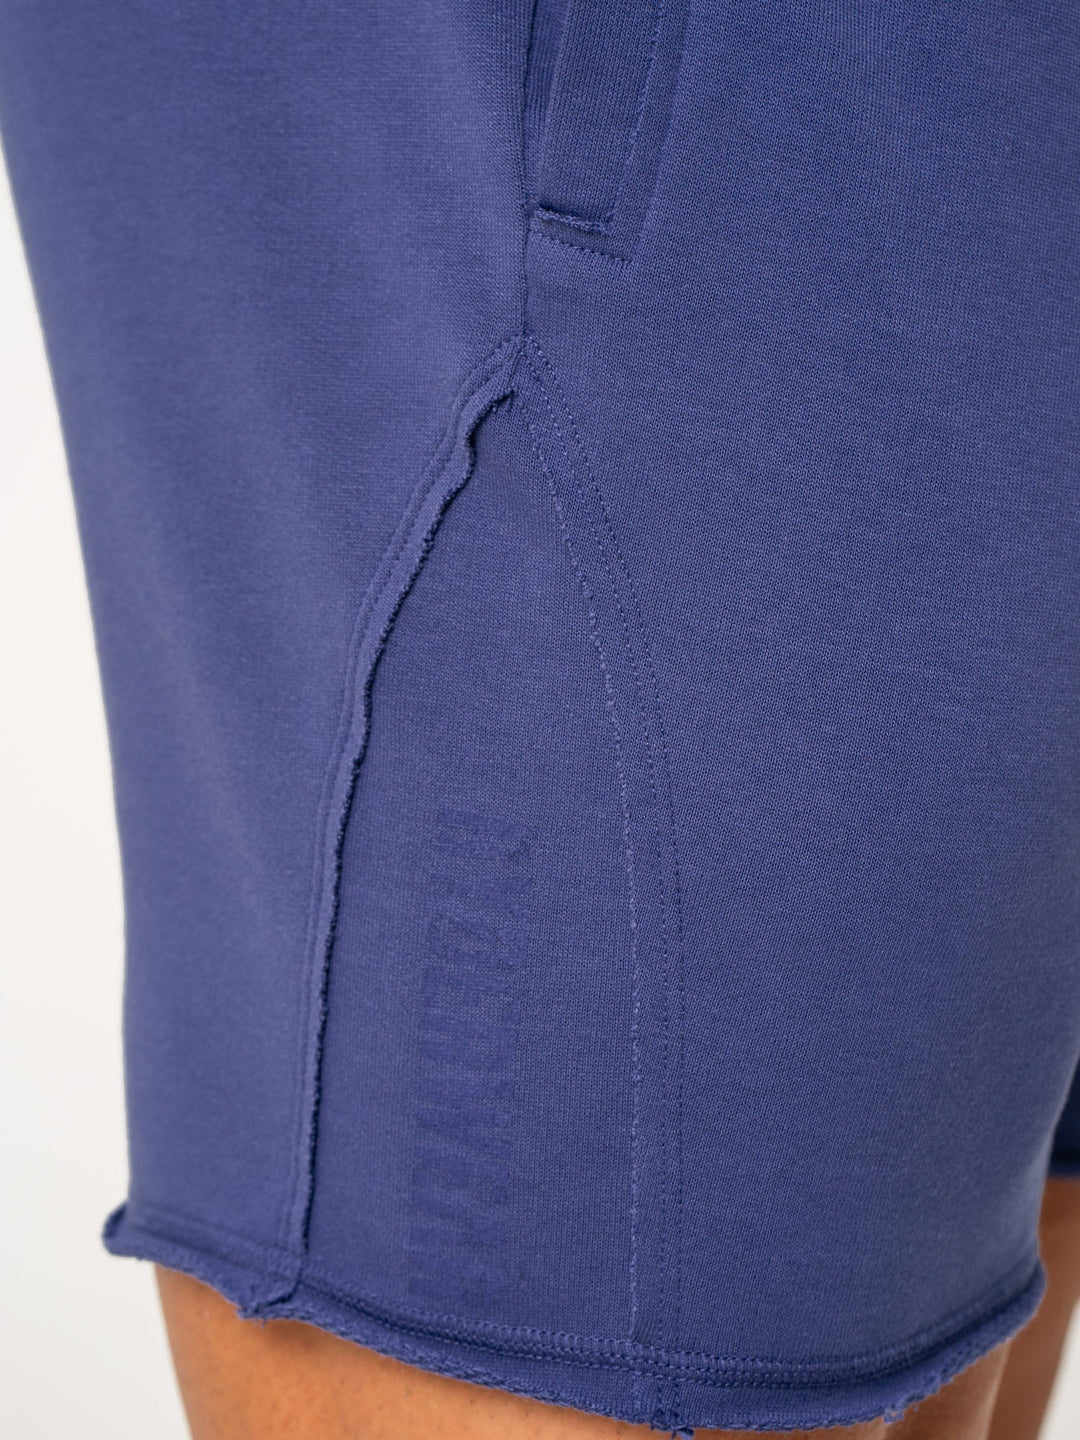 Force 6" Track Shorts - Indigo Clothing Ryderwear 